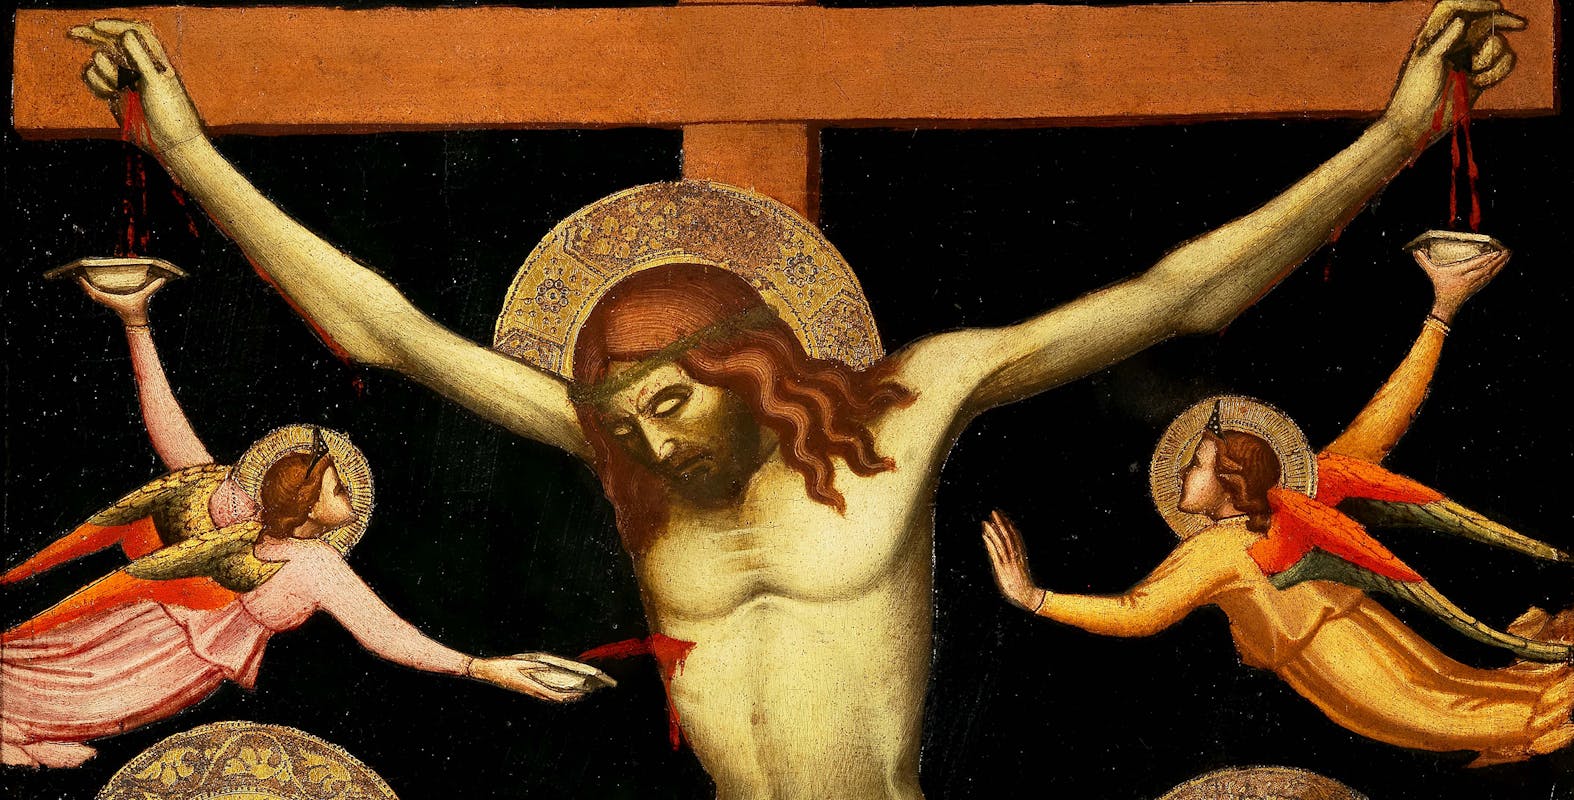 Crucifixion by Niccolò di Pietro Gerini